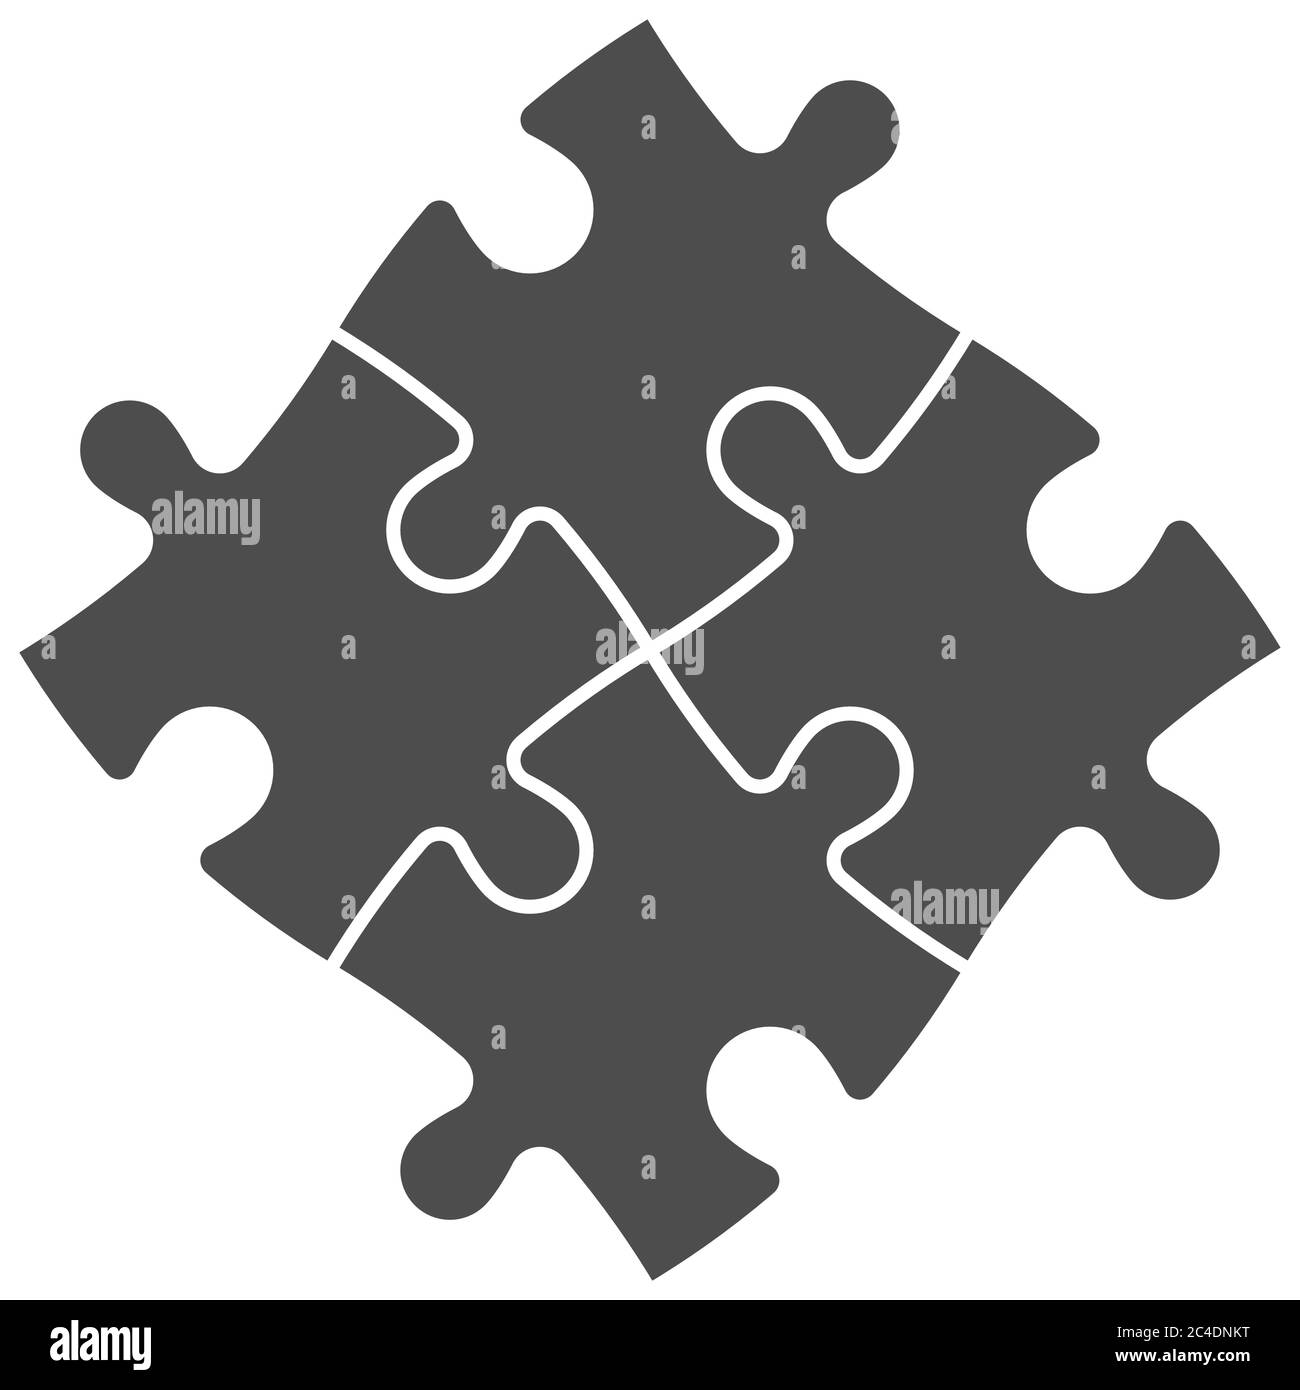 Gelöst Puzzle von vier grauen Stücken. Teamzusammenarbeit, Teamarbeit oder Geschäftsthema für Lösungen. Einfache flache Vektorgrafik auf weißem Hintergrund. Stock Vektor